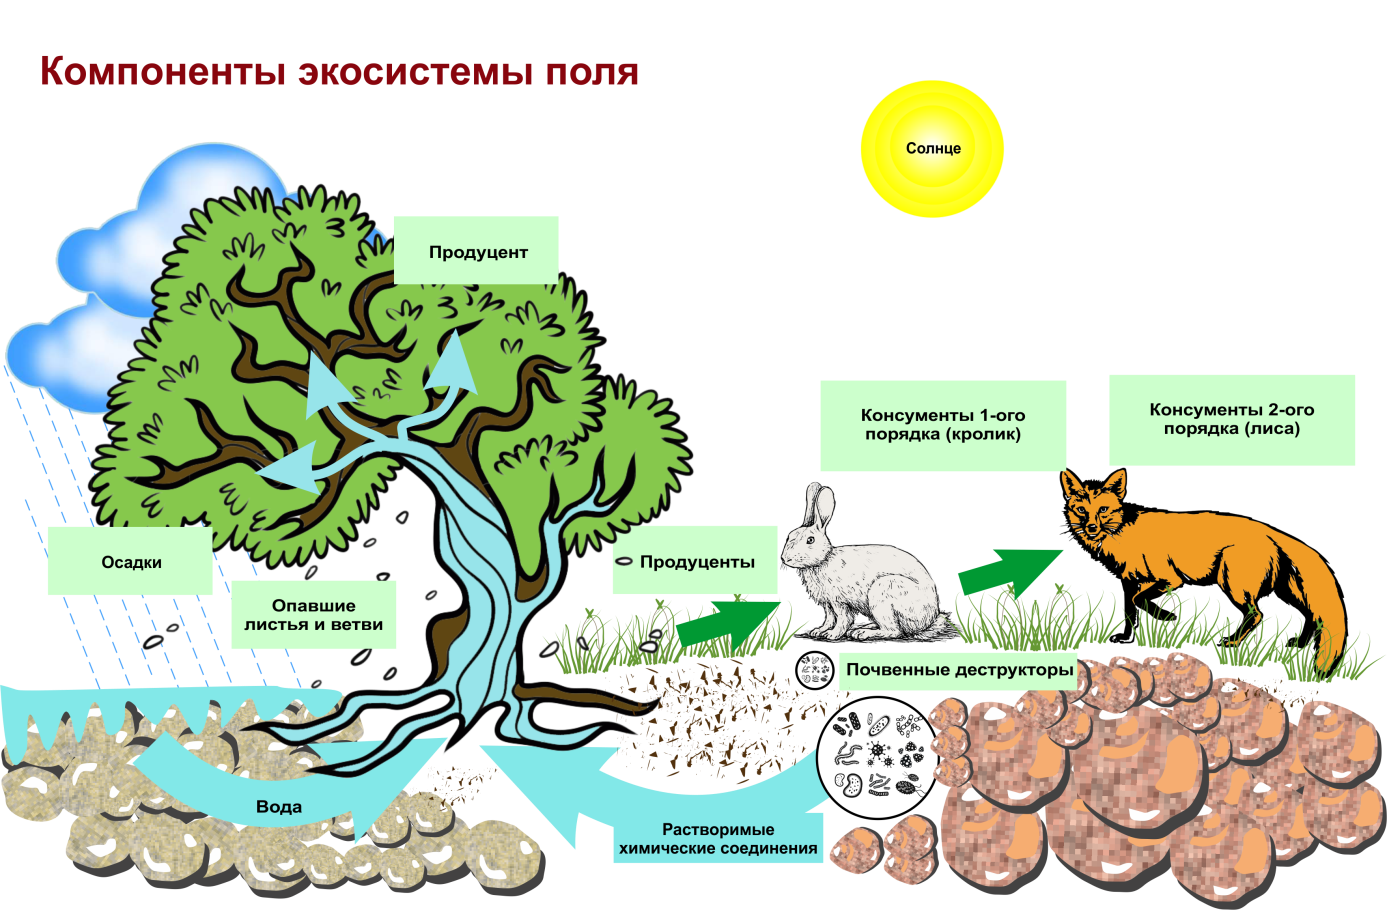 Как связаны между собой живые организмы. Структура биогеоценоза и экосистемы. Схема трофической структуры биоценоза широколиственного леса. Строение биогеоценоза экосистемы. Схема состава компонентов экосистемы.